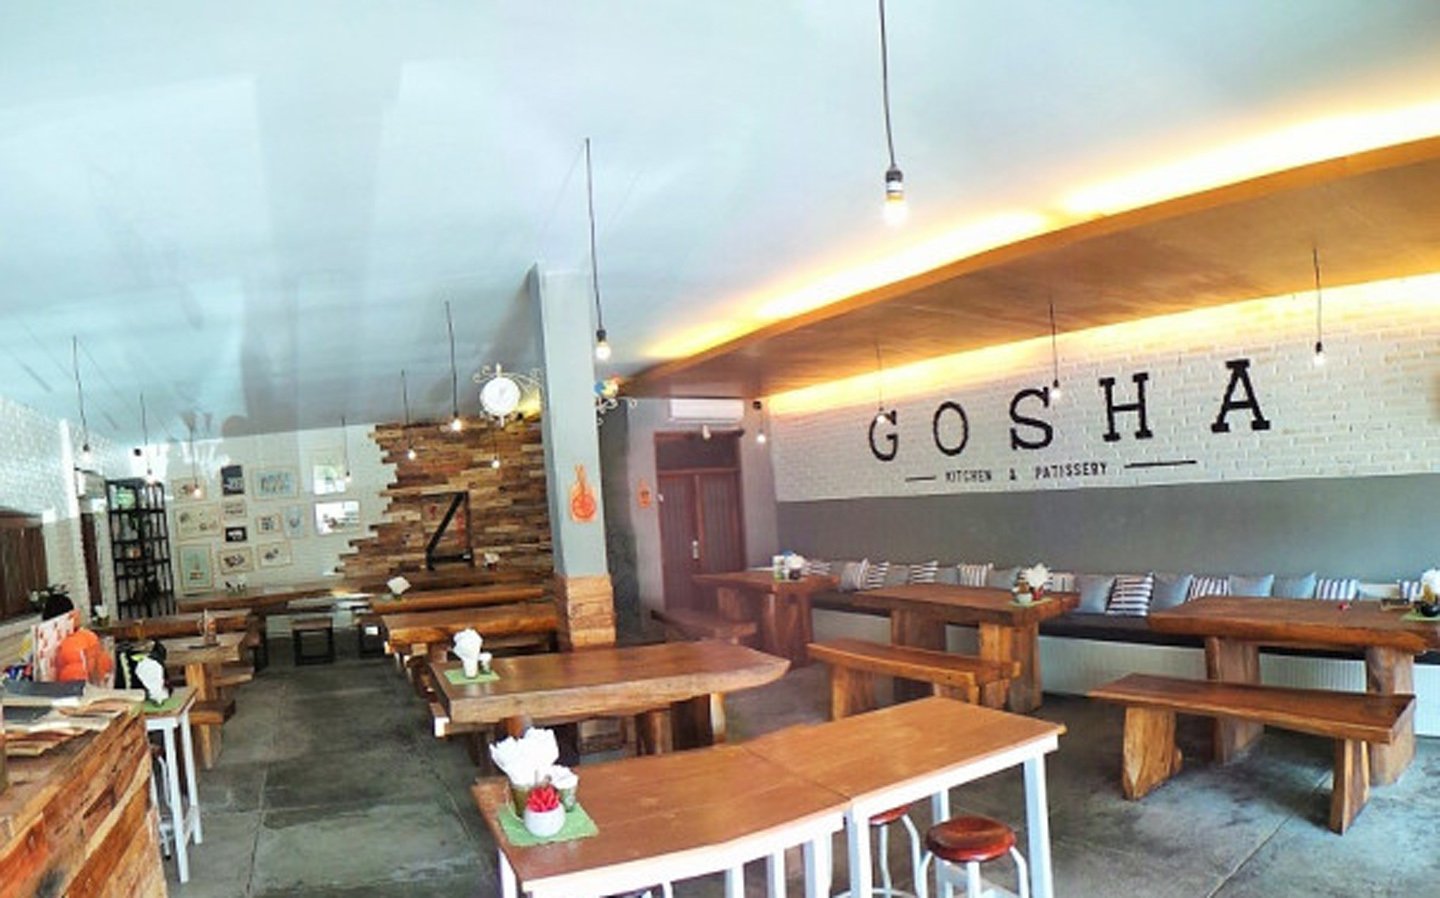 Gosha Kitchen & Patisserie